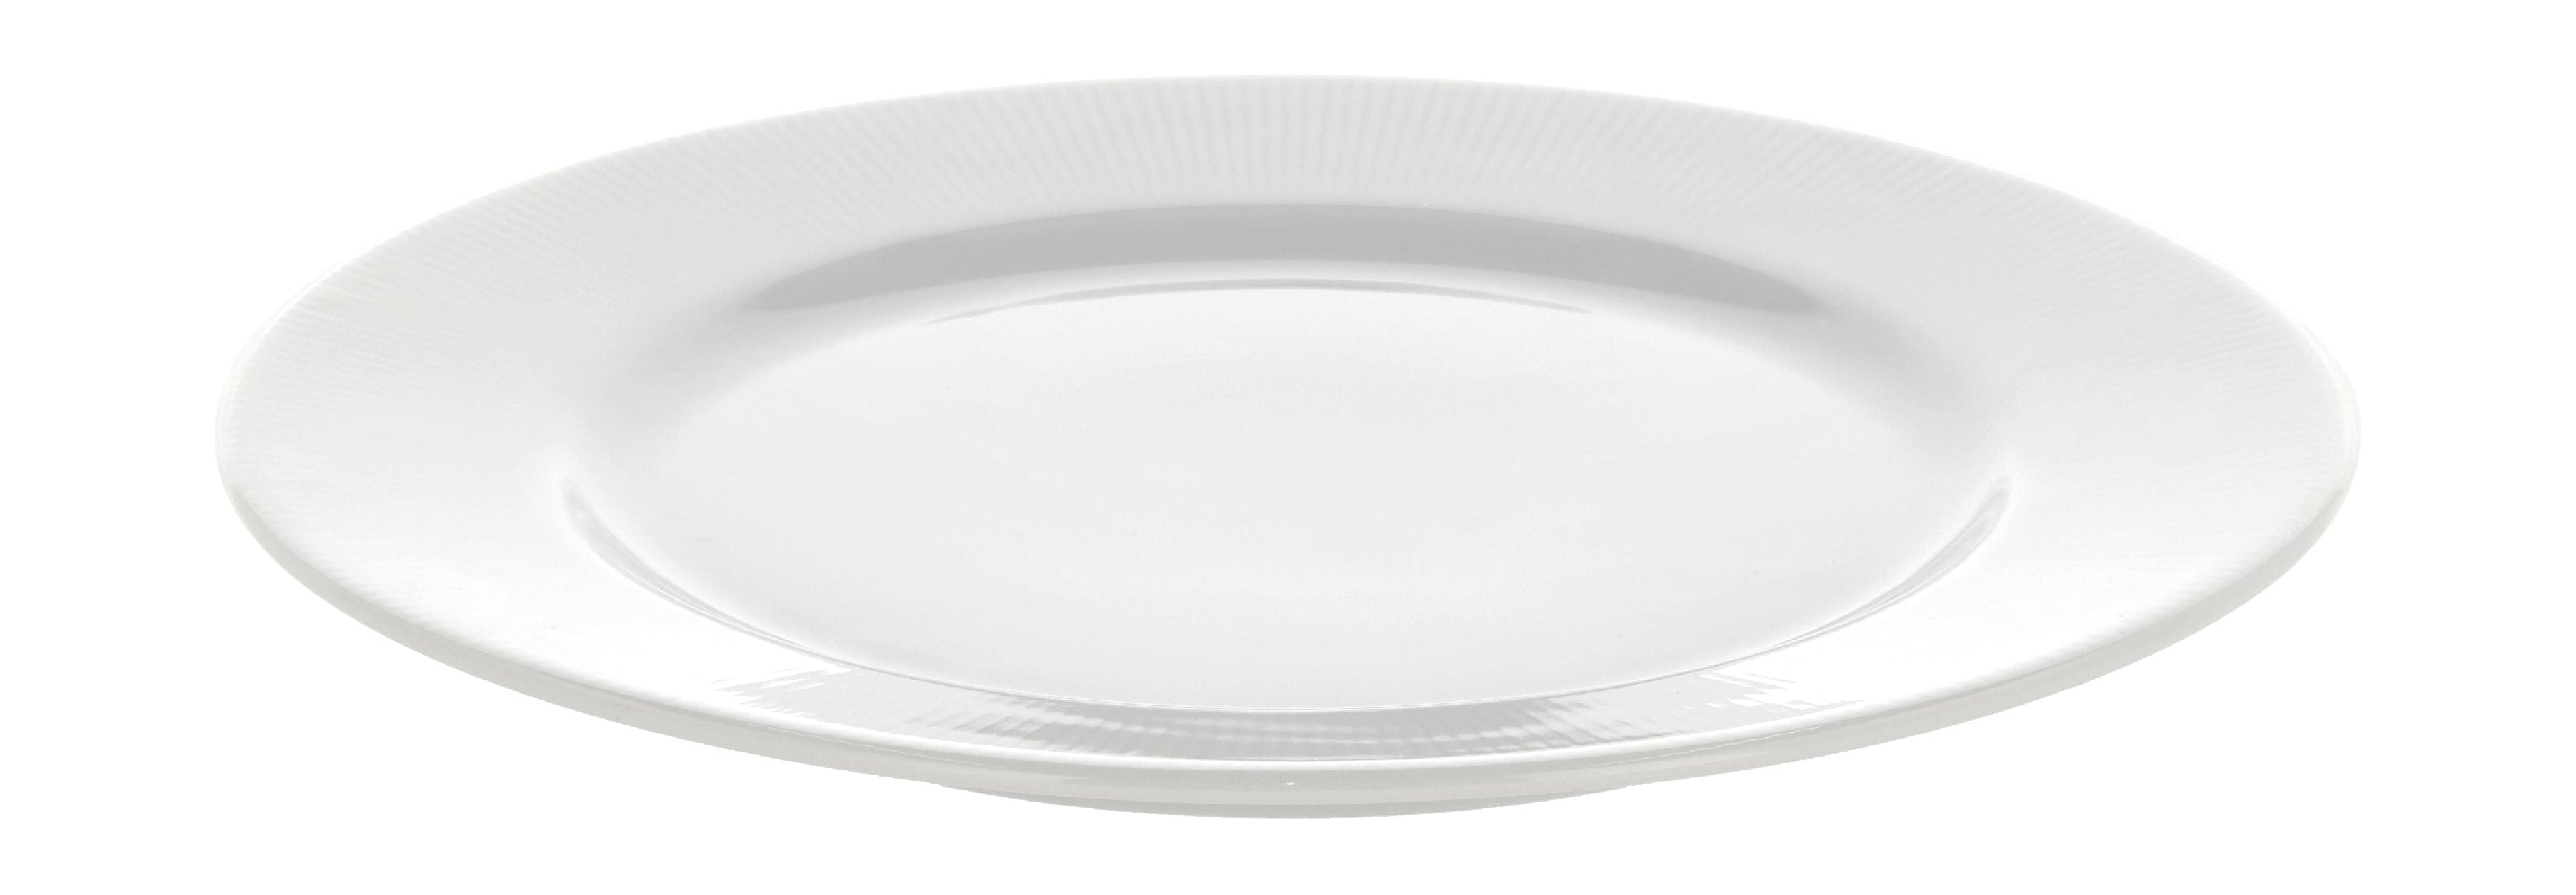 Pillivuyt Assiette plate de l'événement avec bord Ø22 cm, blanc